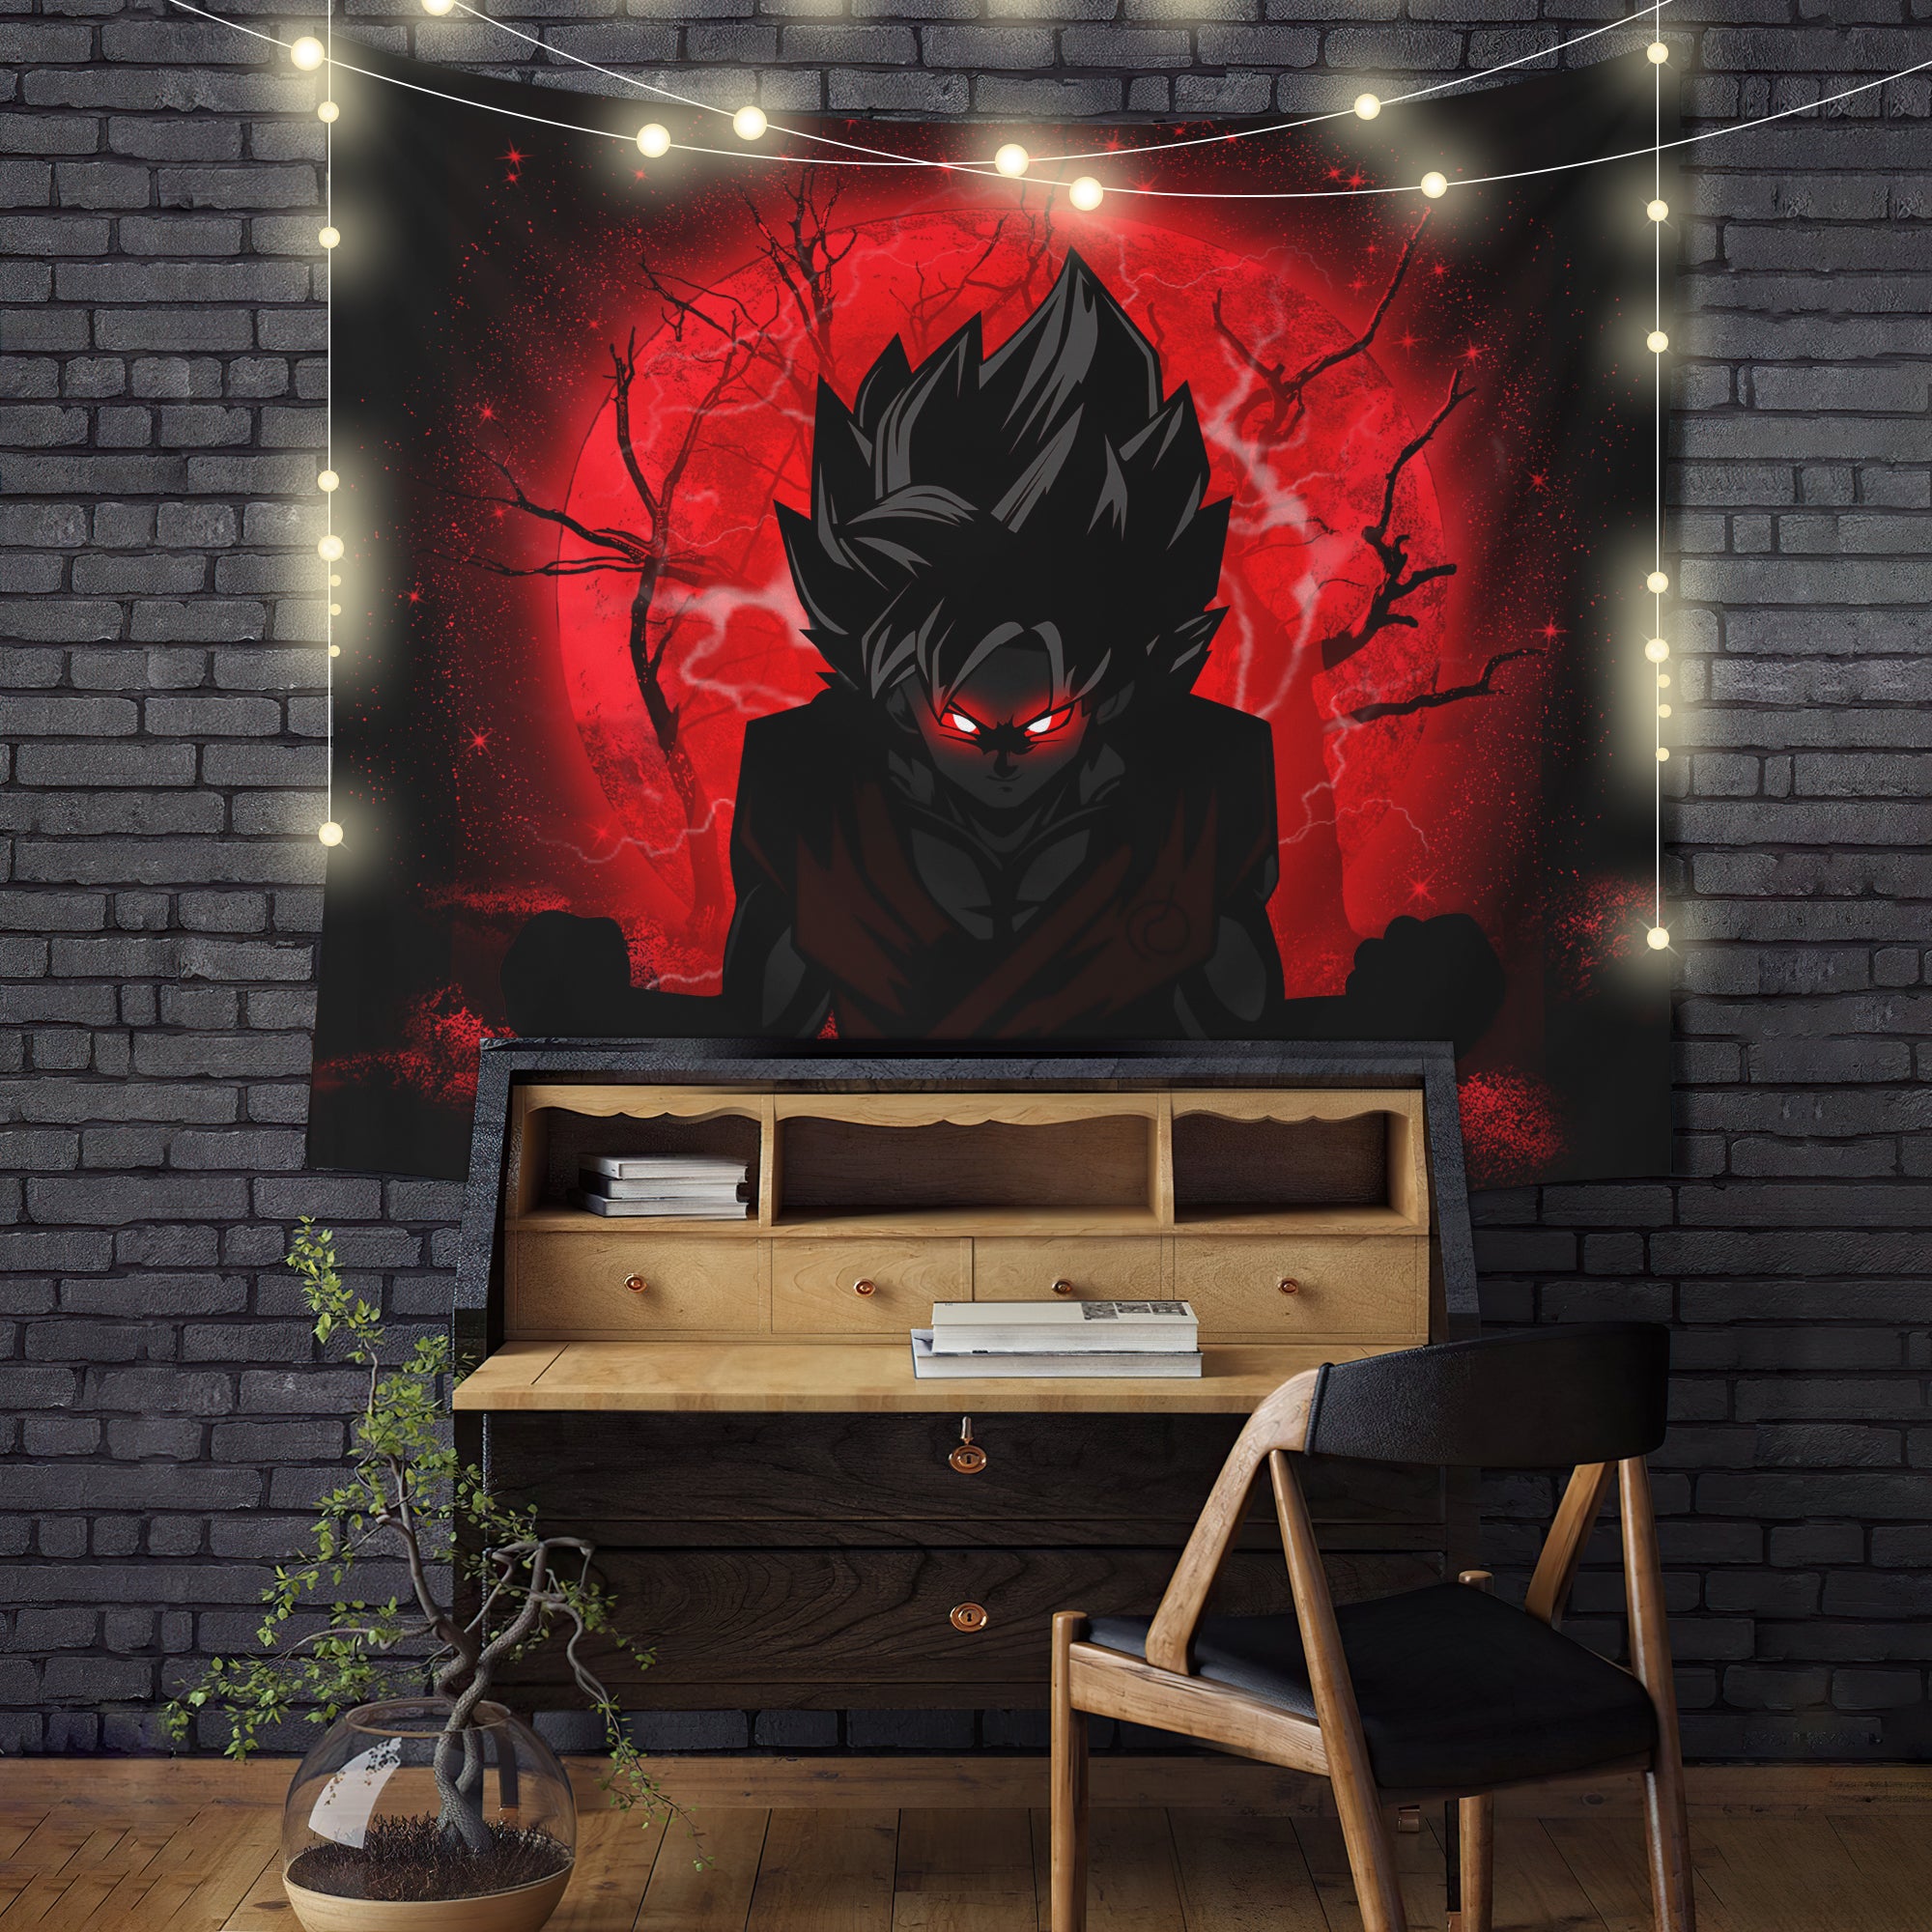 Goku Saiyan Evil Moonlight Tapestry Room Decor Nearkii